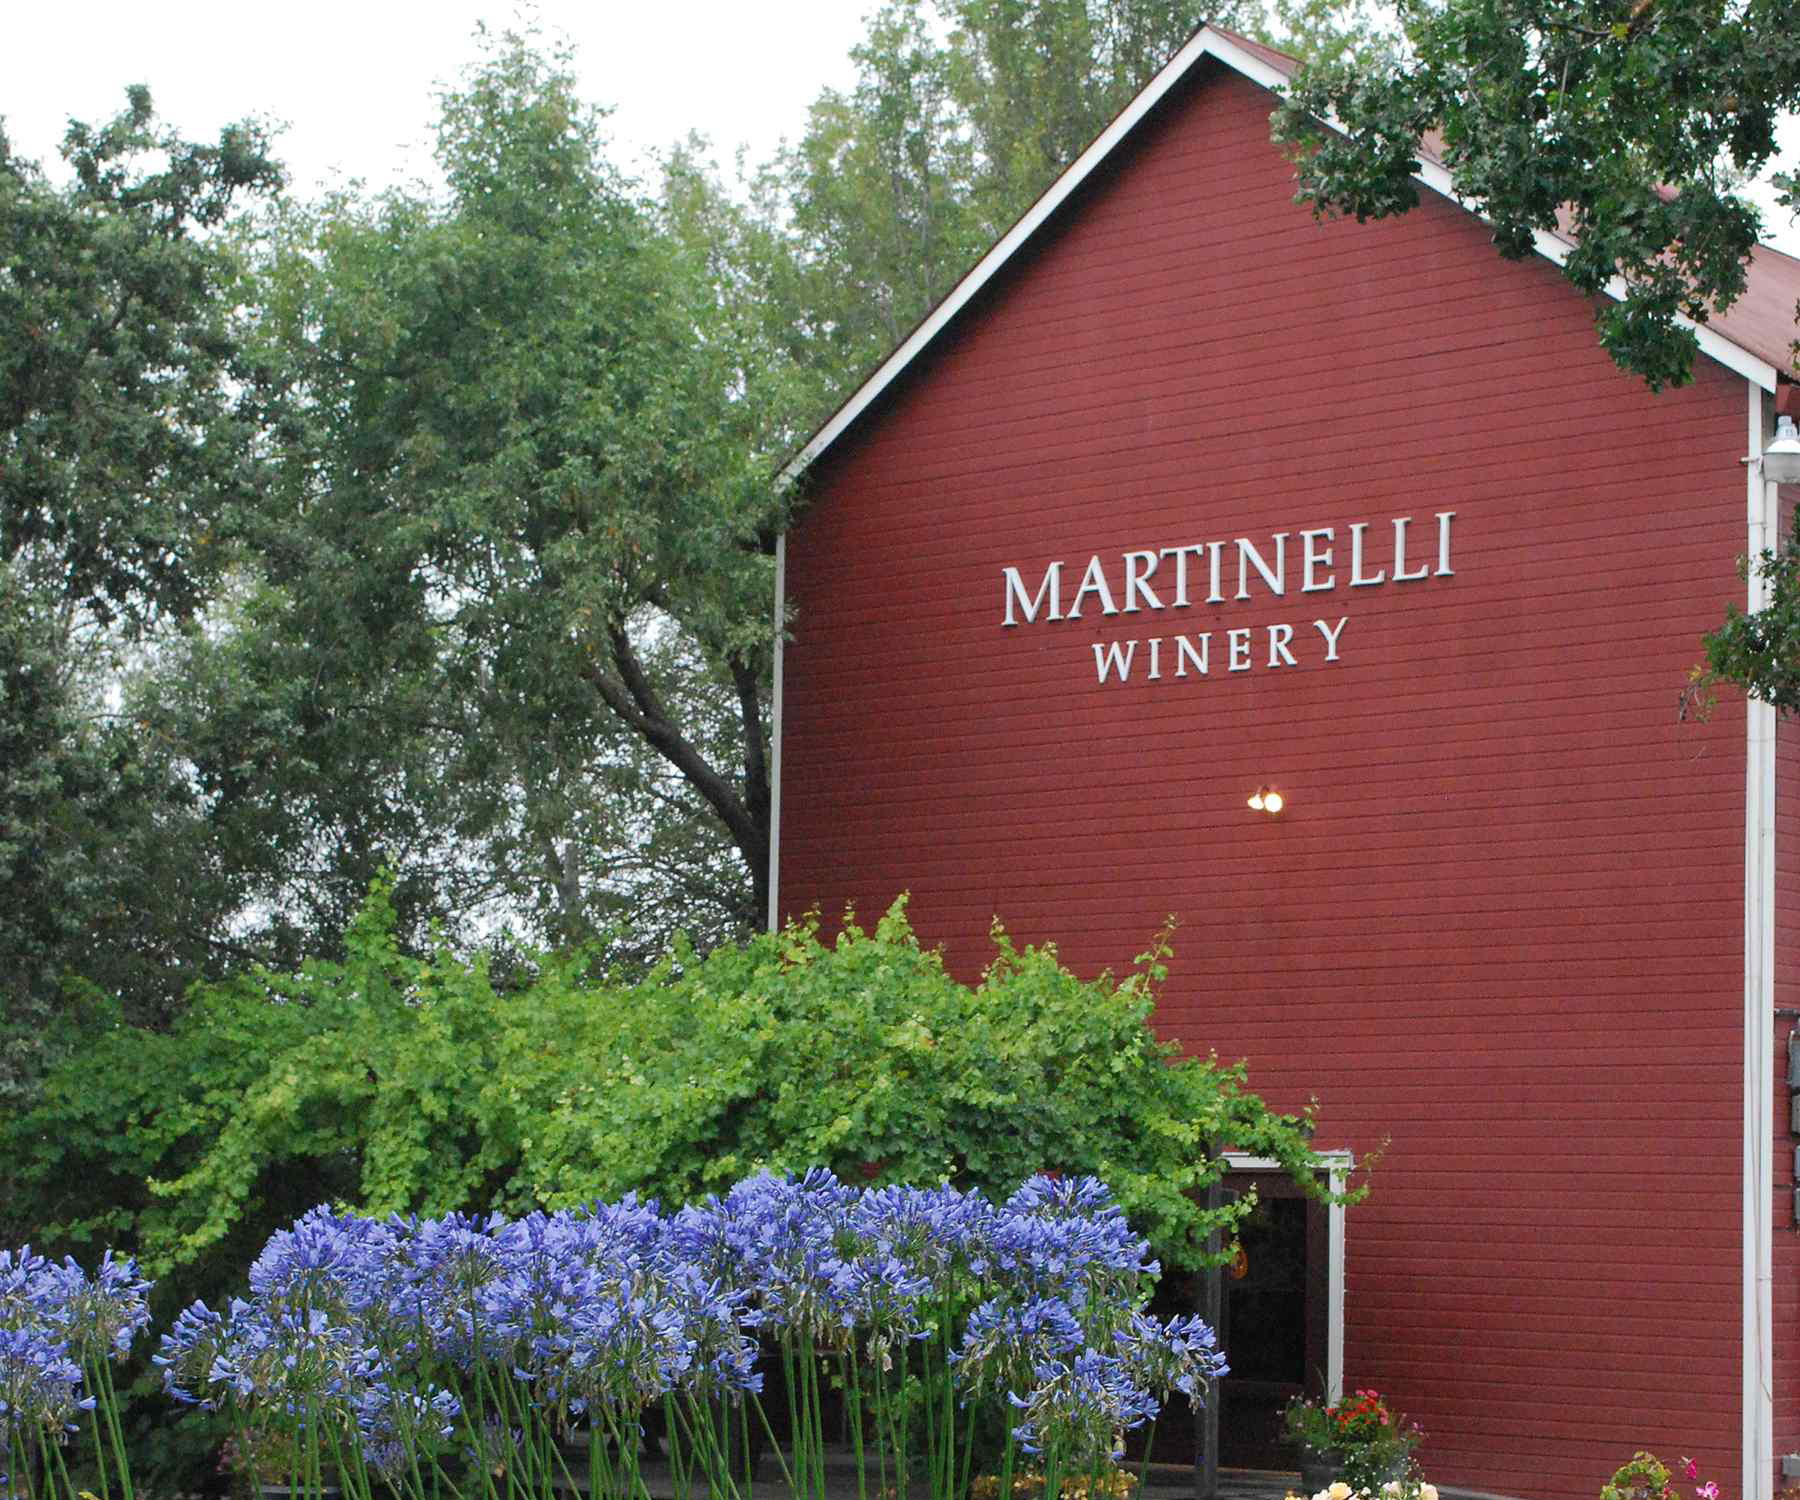 Martinelli winery